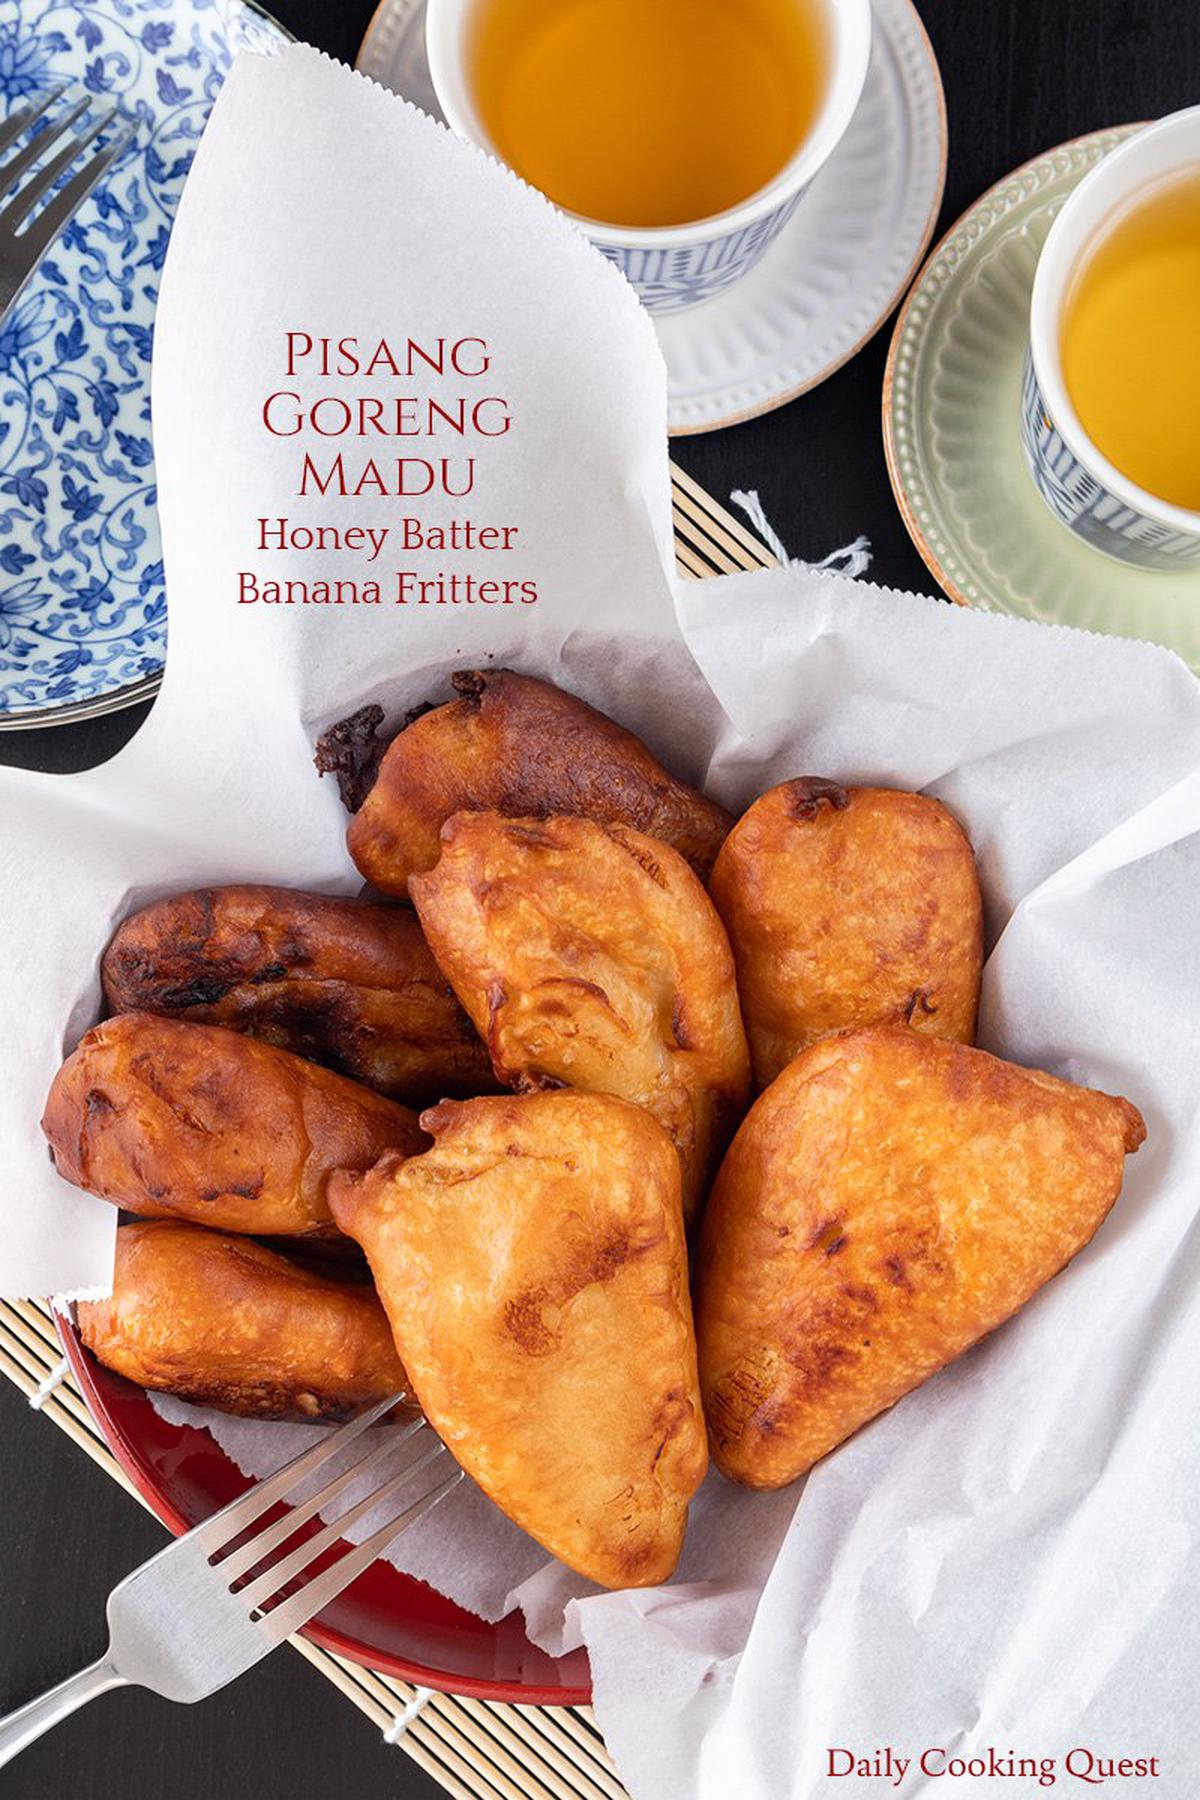 Pisang Goreng Madu - Honey Batter Banana Fritters